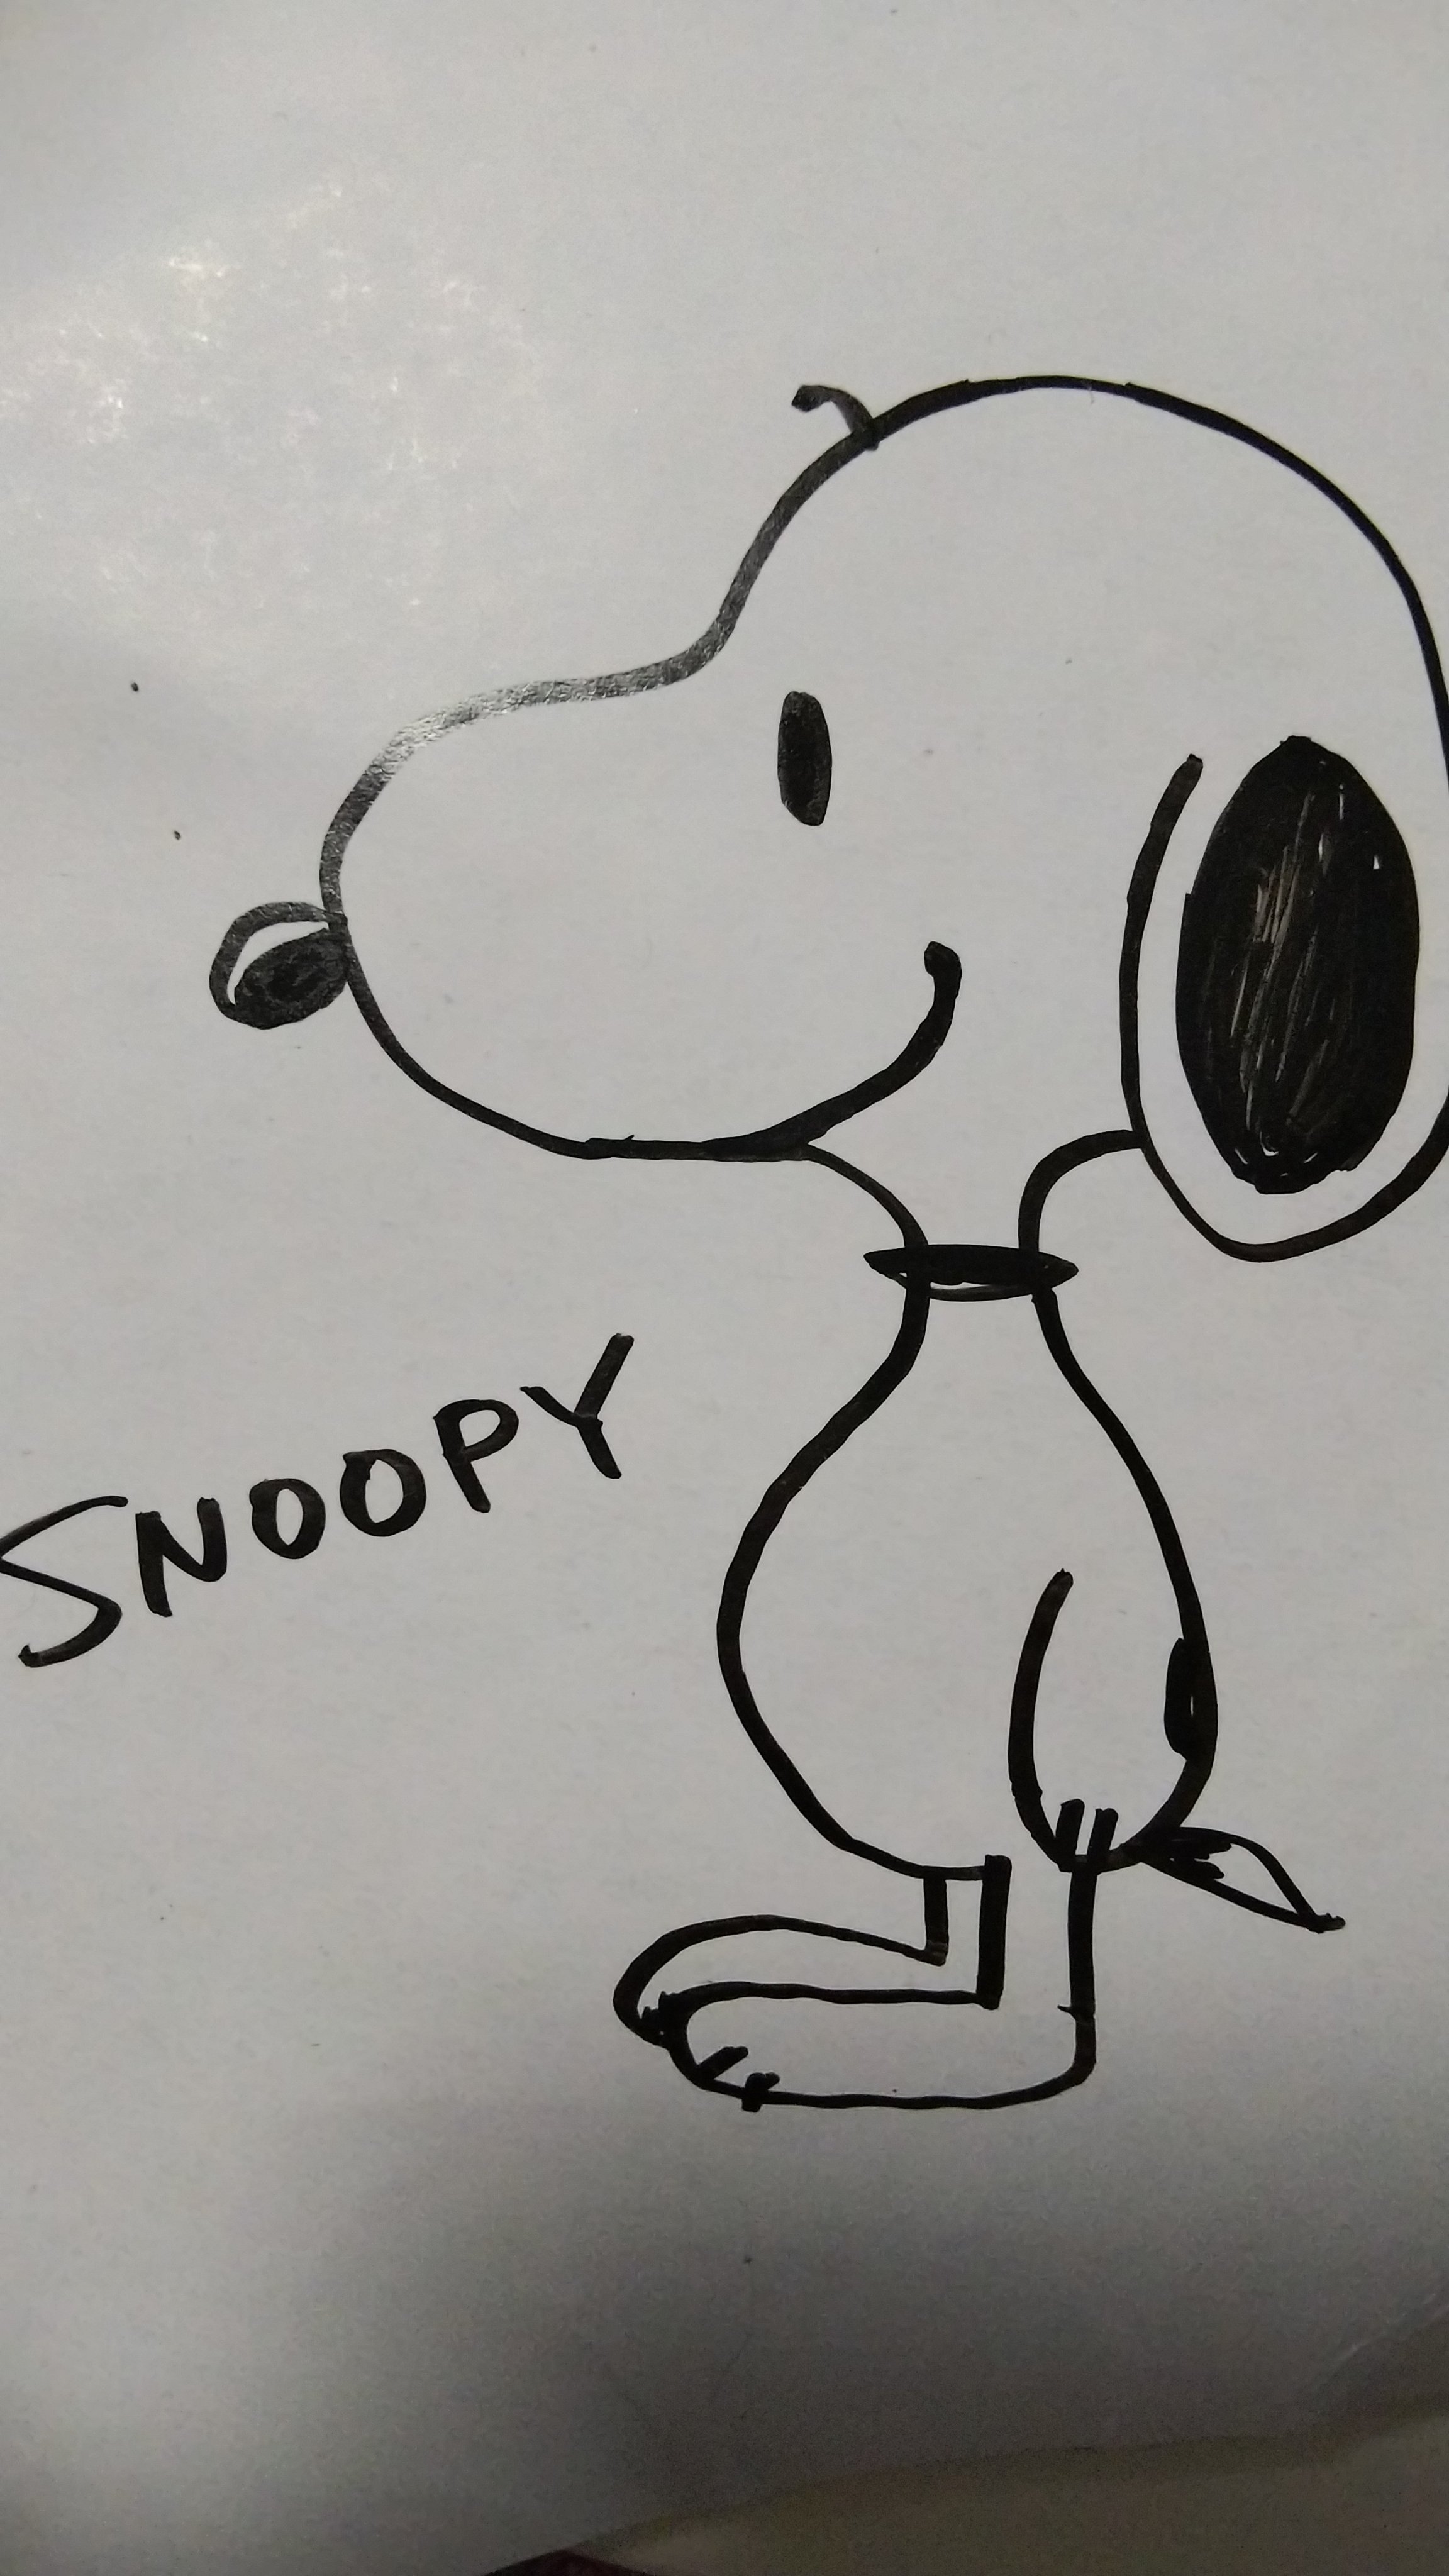 Snoopy Museum Tokyo スヌーピーの描き方をご紹介します あなたが描いたスヌーピーに スヌーピーを描こう をつけてシェアしてくださいね Snoopymuseumtokyo Snoopy Peanuts スヌーピーミュージアム スヌーピー ピーナッツ Howtodraw